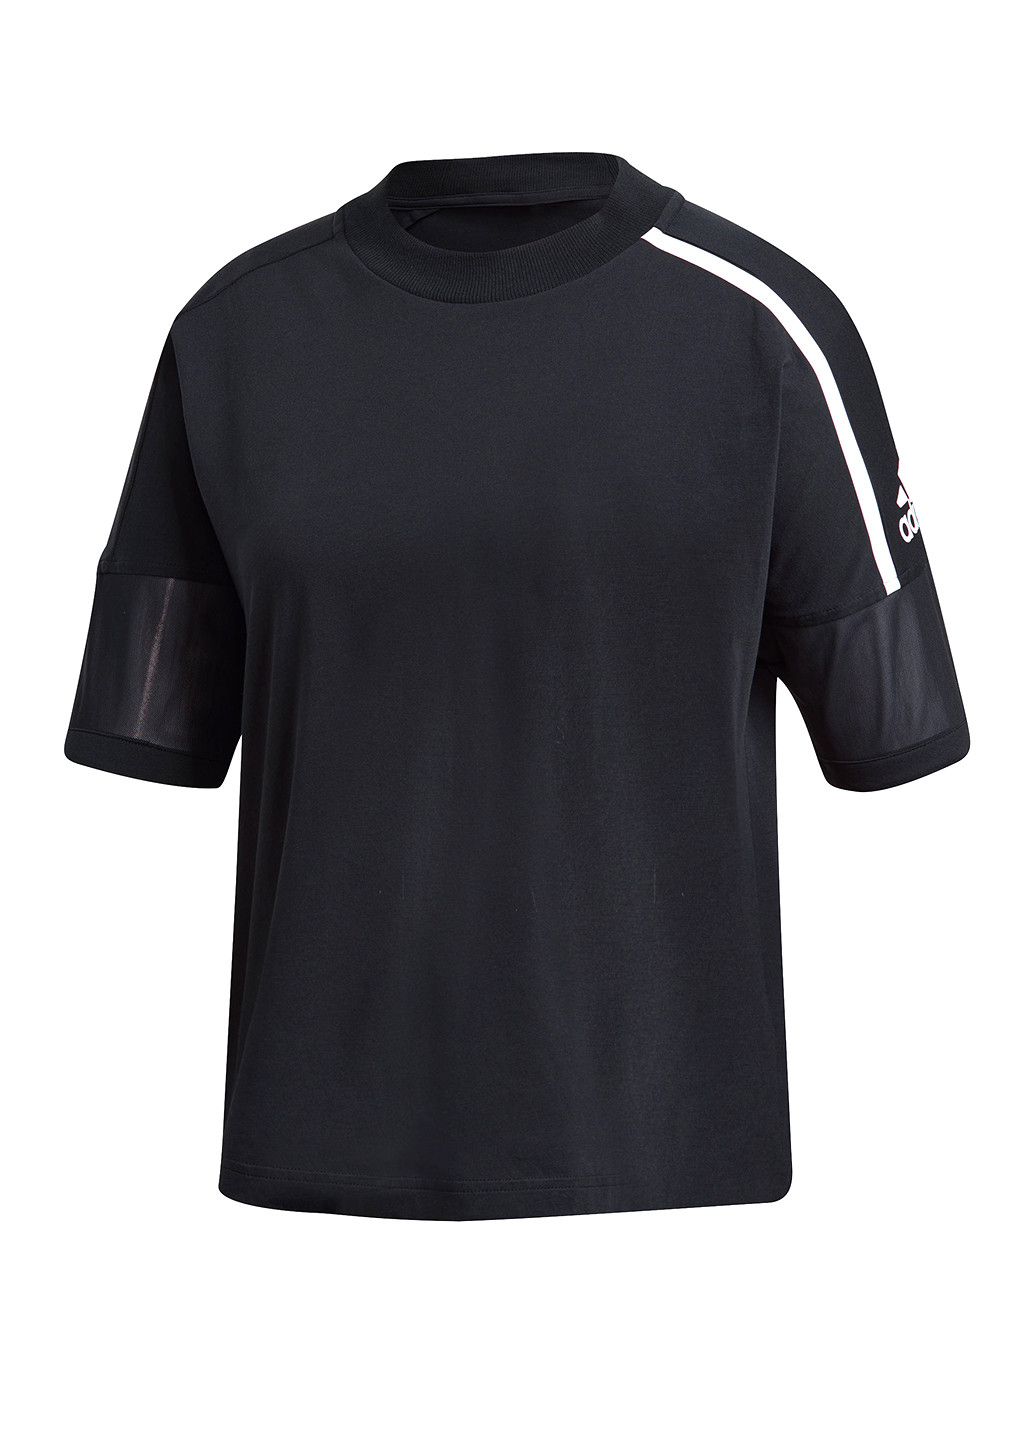 Черная летняя футболка с коротким рукавом adidas